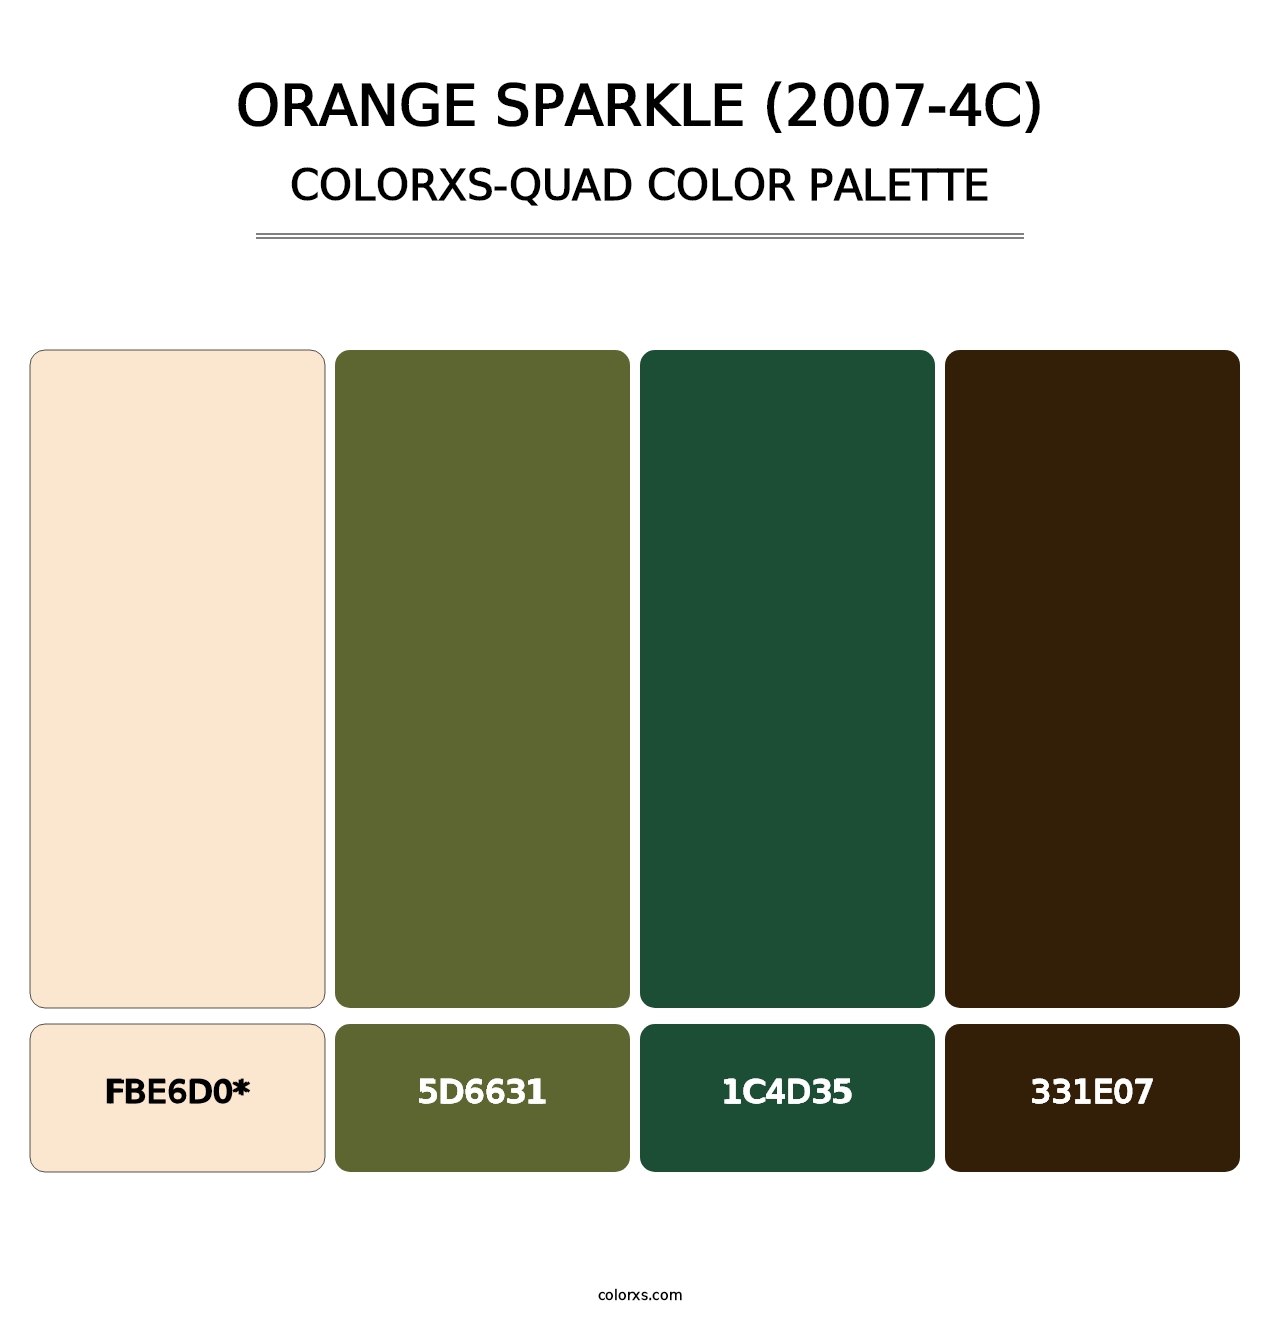 Orange Sparkle (2007-4C) - Colorxs Quad Palette